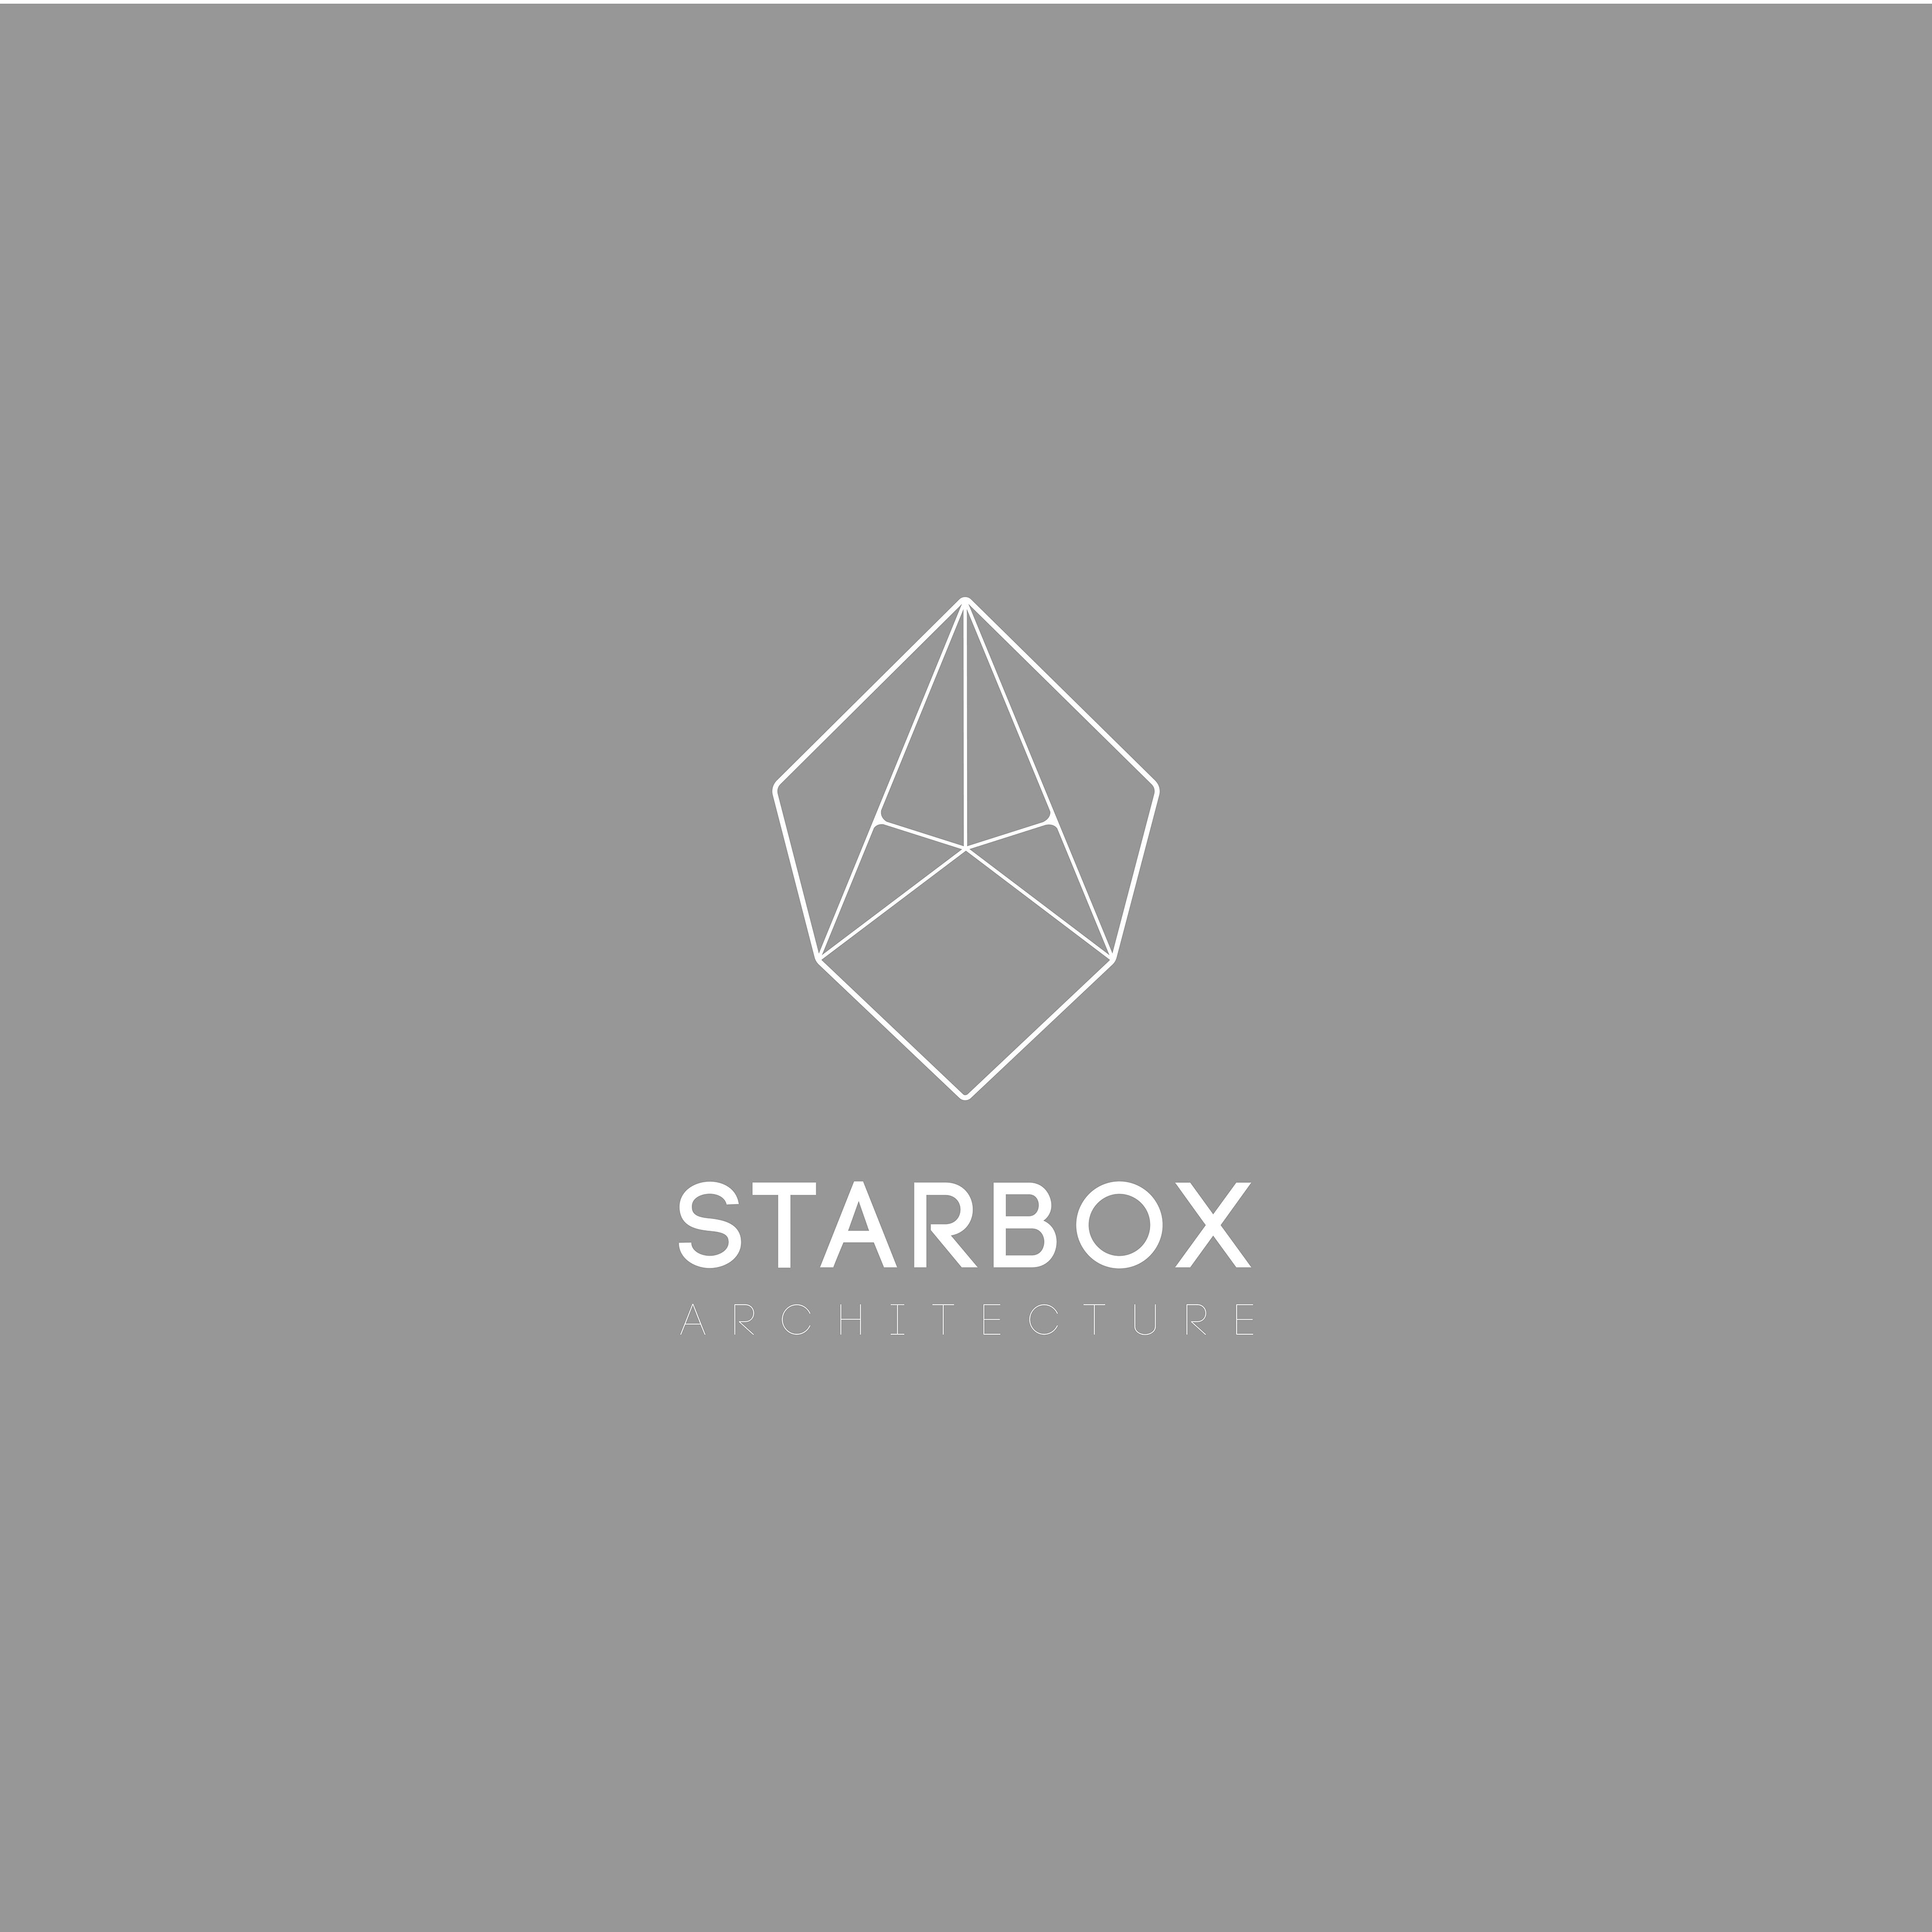 Spenser Coward Starbox Logo Design